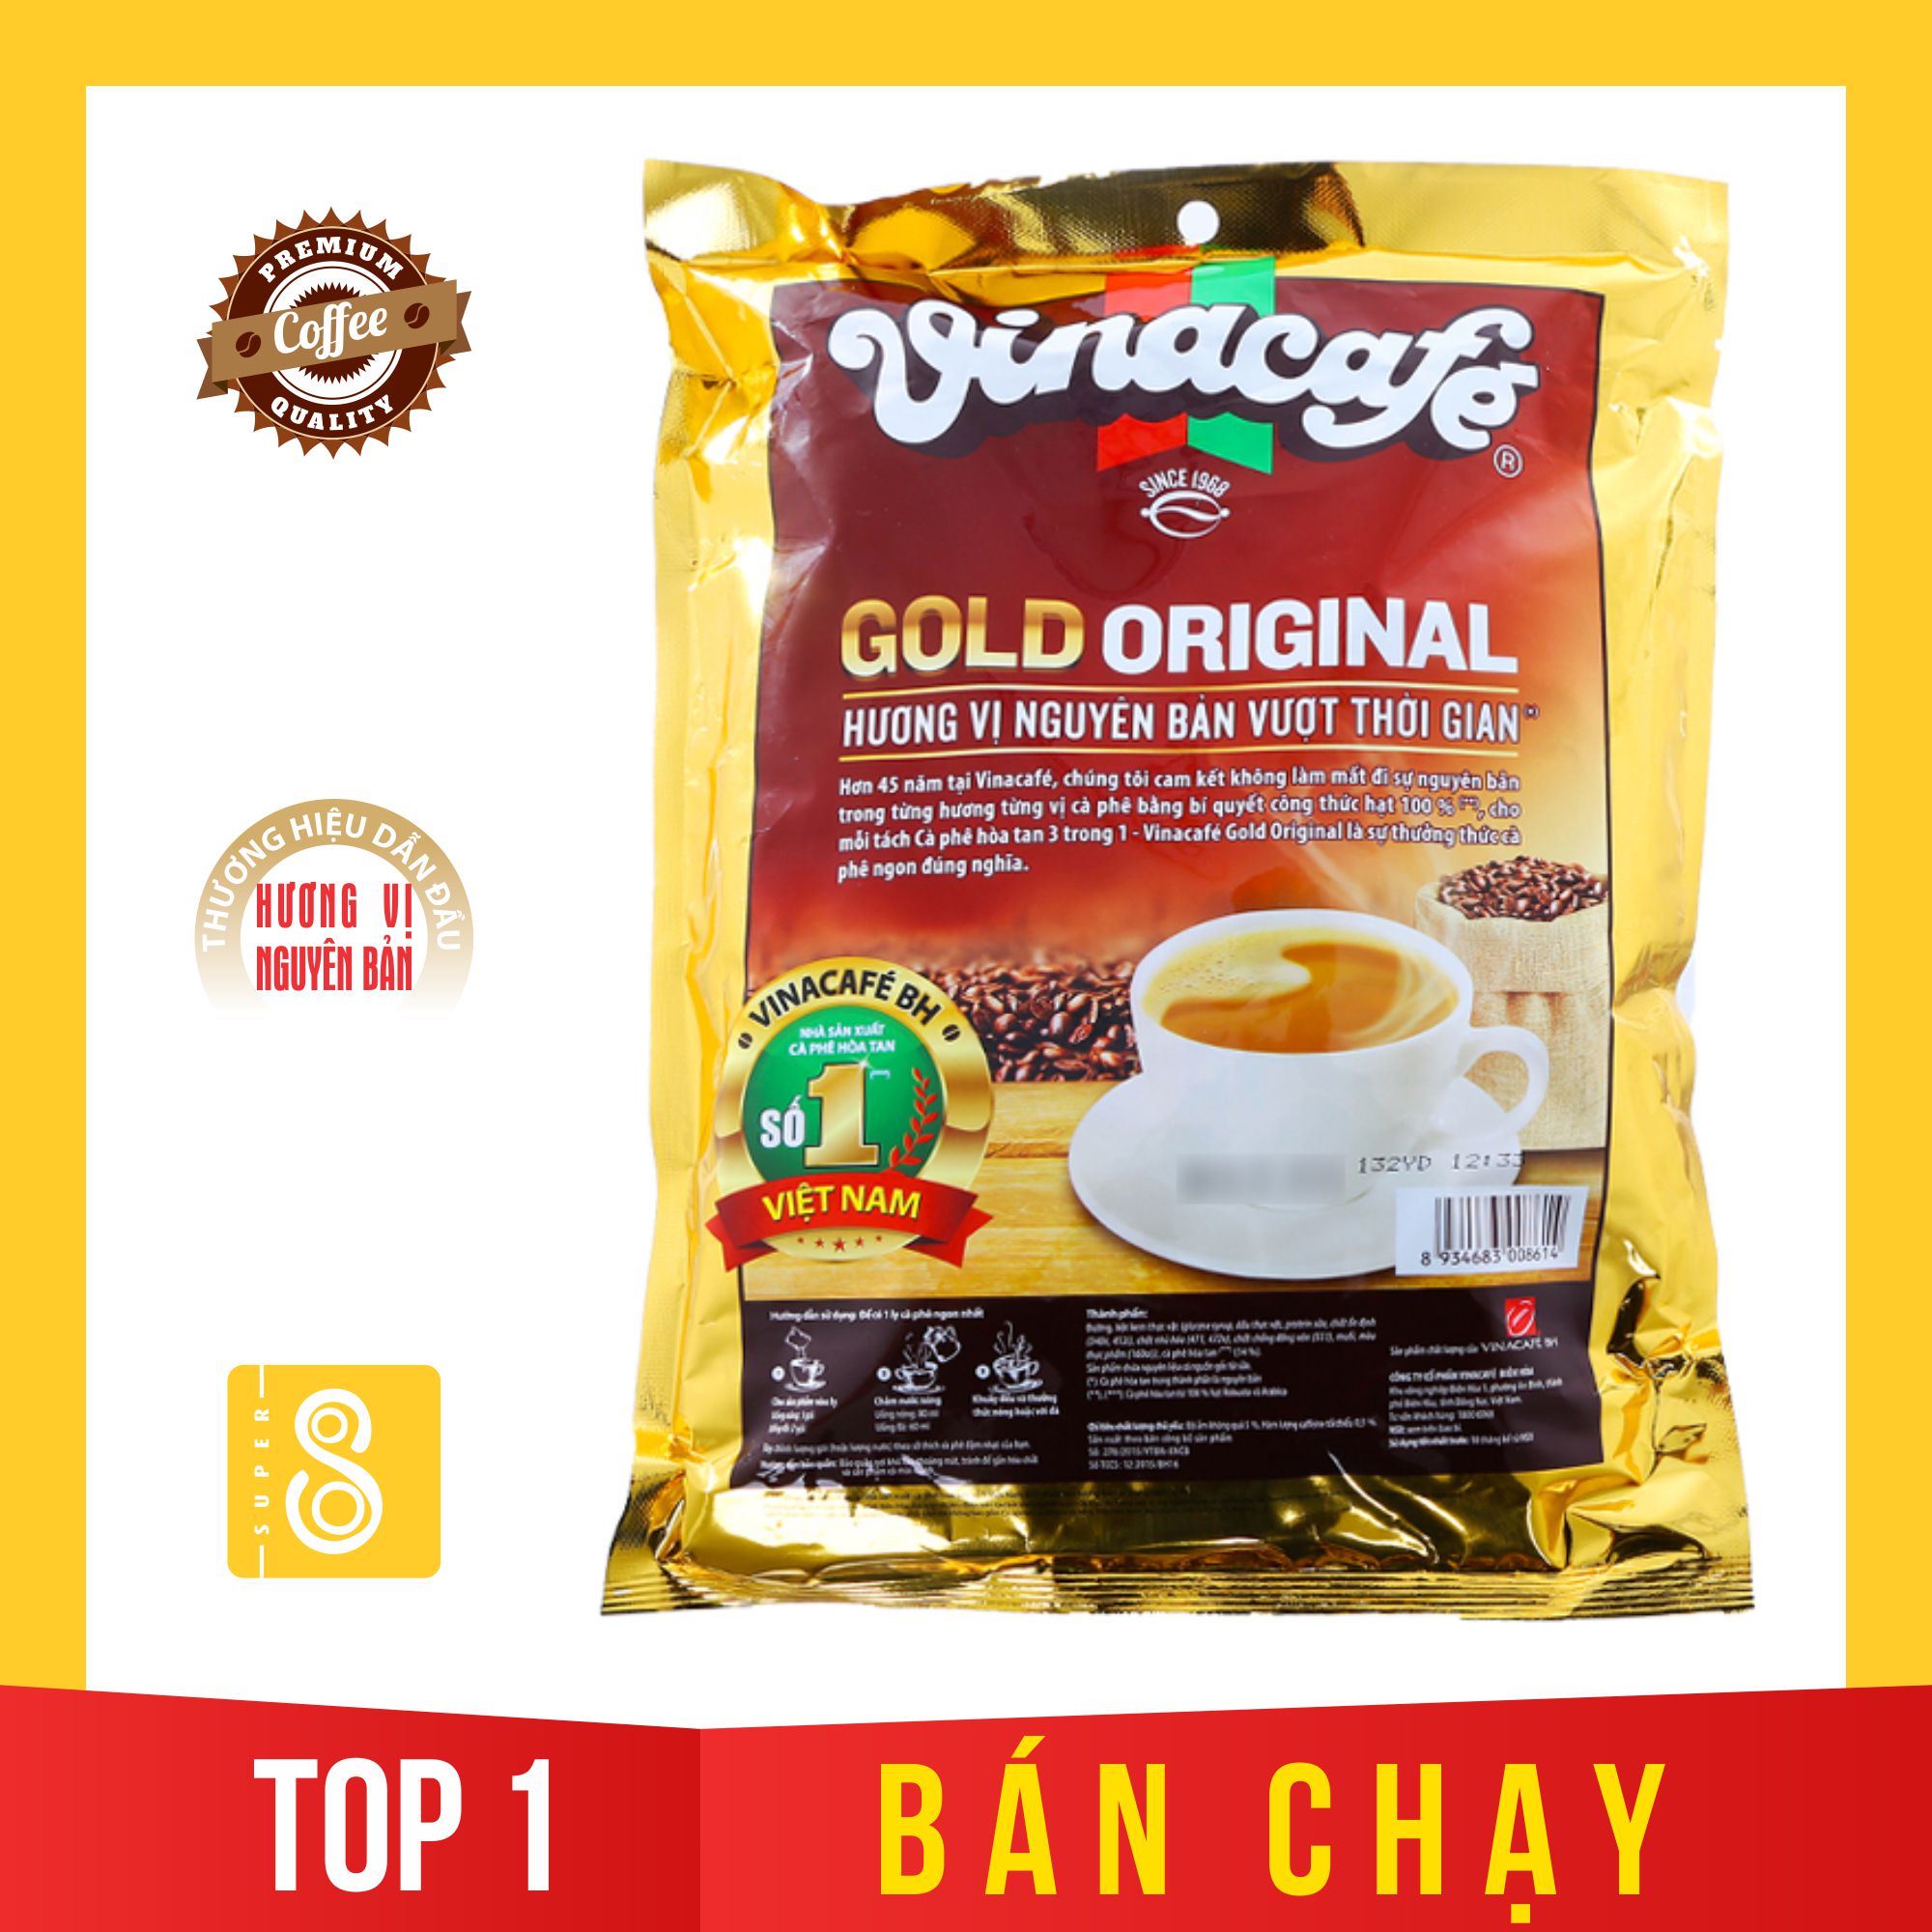 [ HÀNG CHẤT GIÁ RẺ ] Vinacafe 3 trong 1 bao vàng - Cà phê hòa tan Gold Original Vinacafe, Vinacafe cafe sữa hòa tan được ưa chuộng nhất tại Việt Nam - Super 8 thumbnail